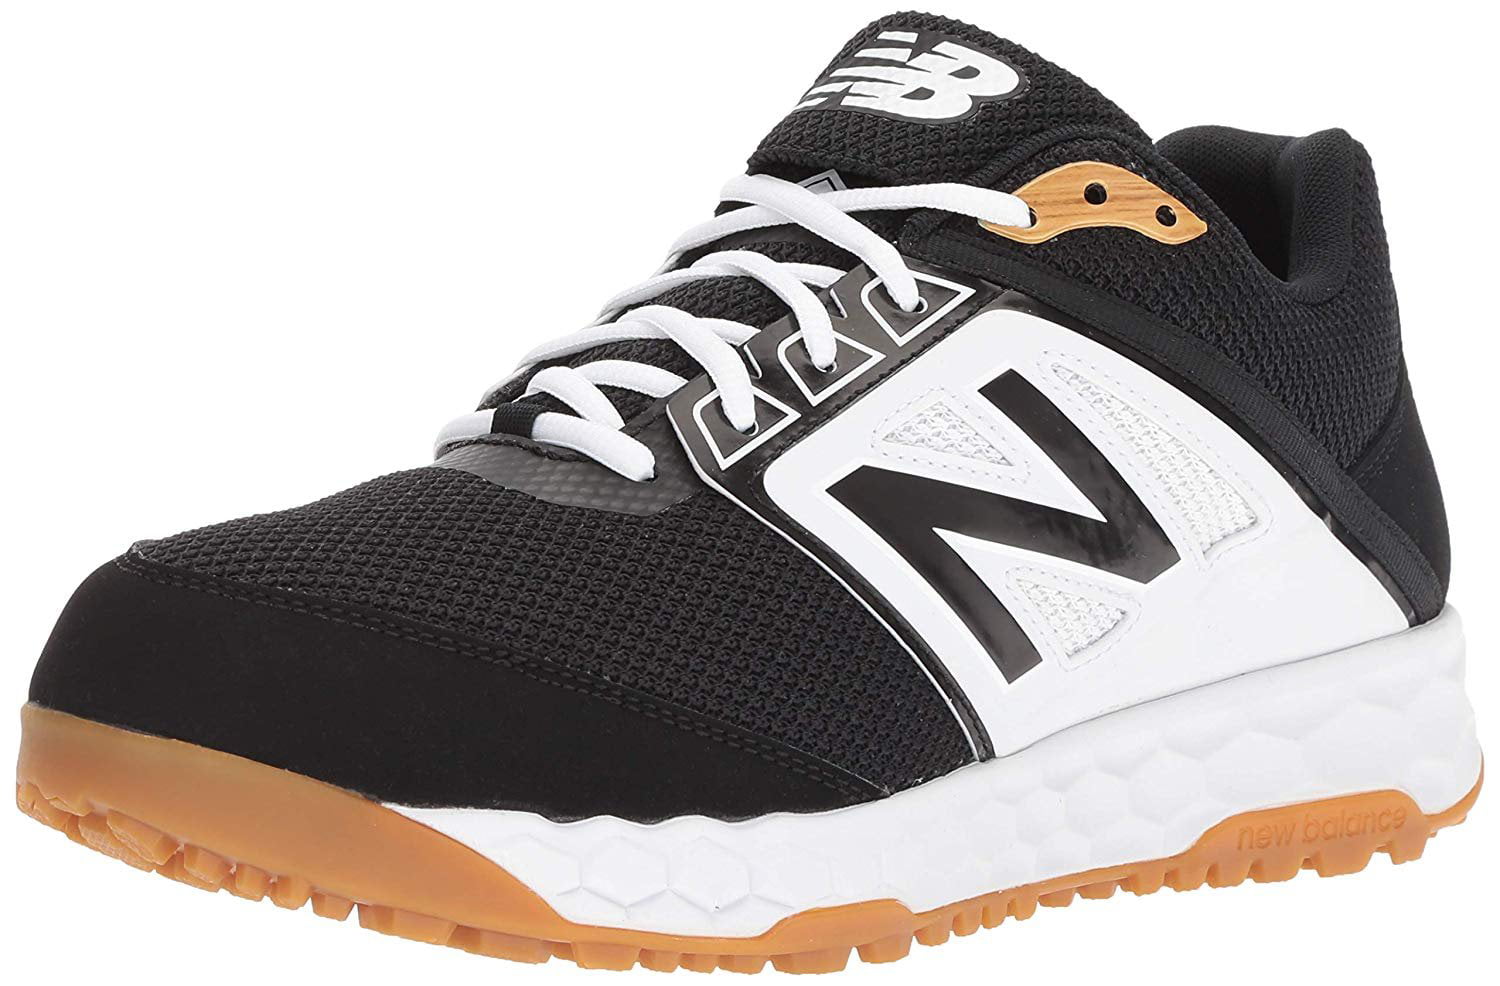 New Balance Men's 3000v4 Turf Baseball Shoe, Black/White, 12 D US ...